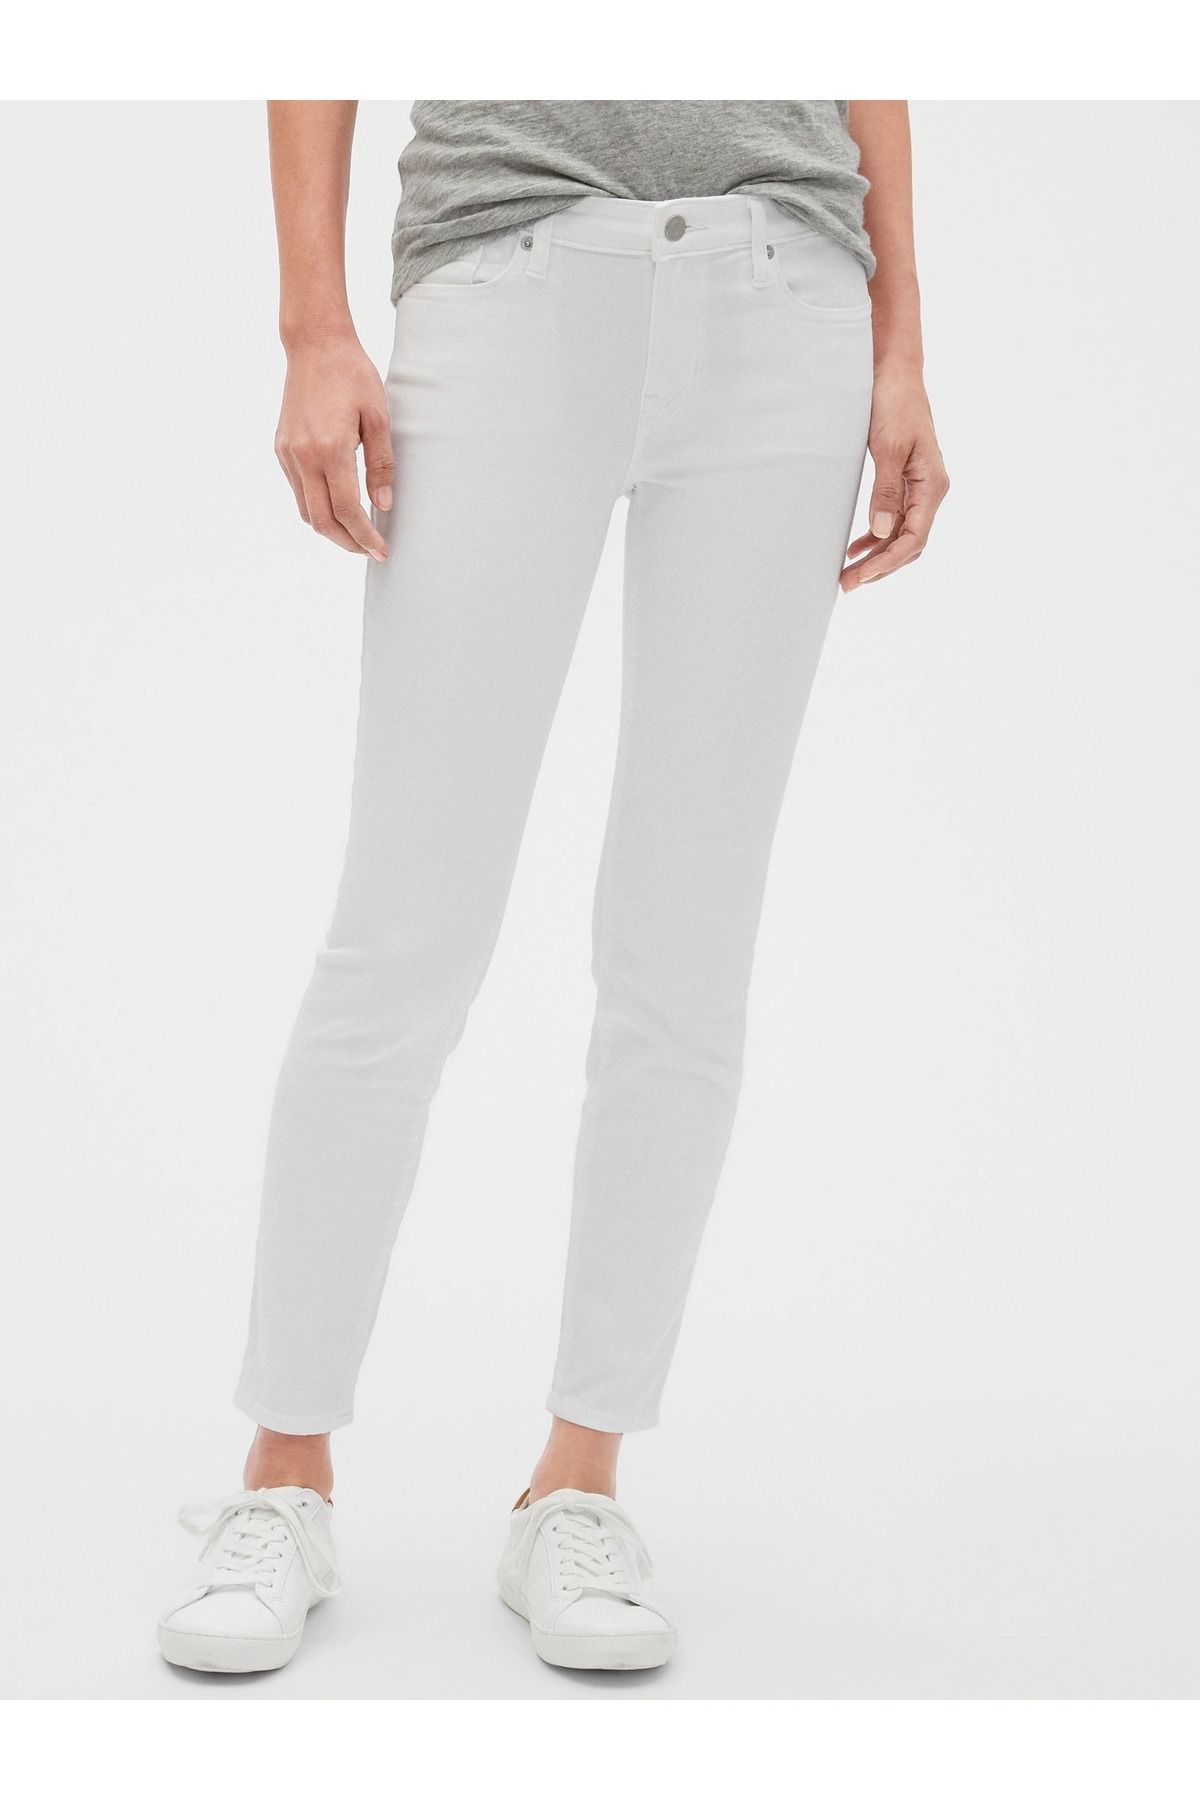 GAP Kadın Beyaz Mid Rise Legging Jean Pantolon